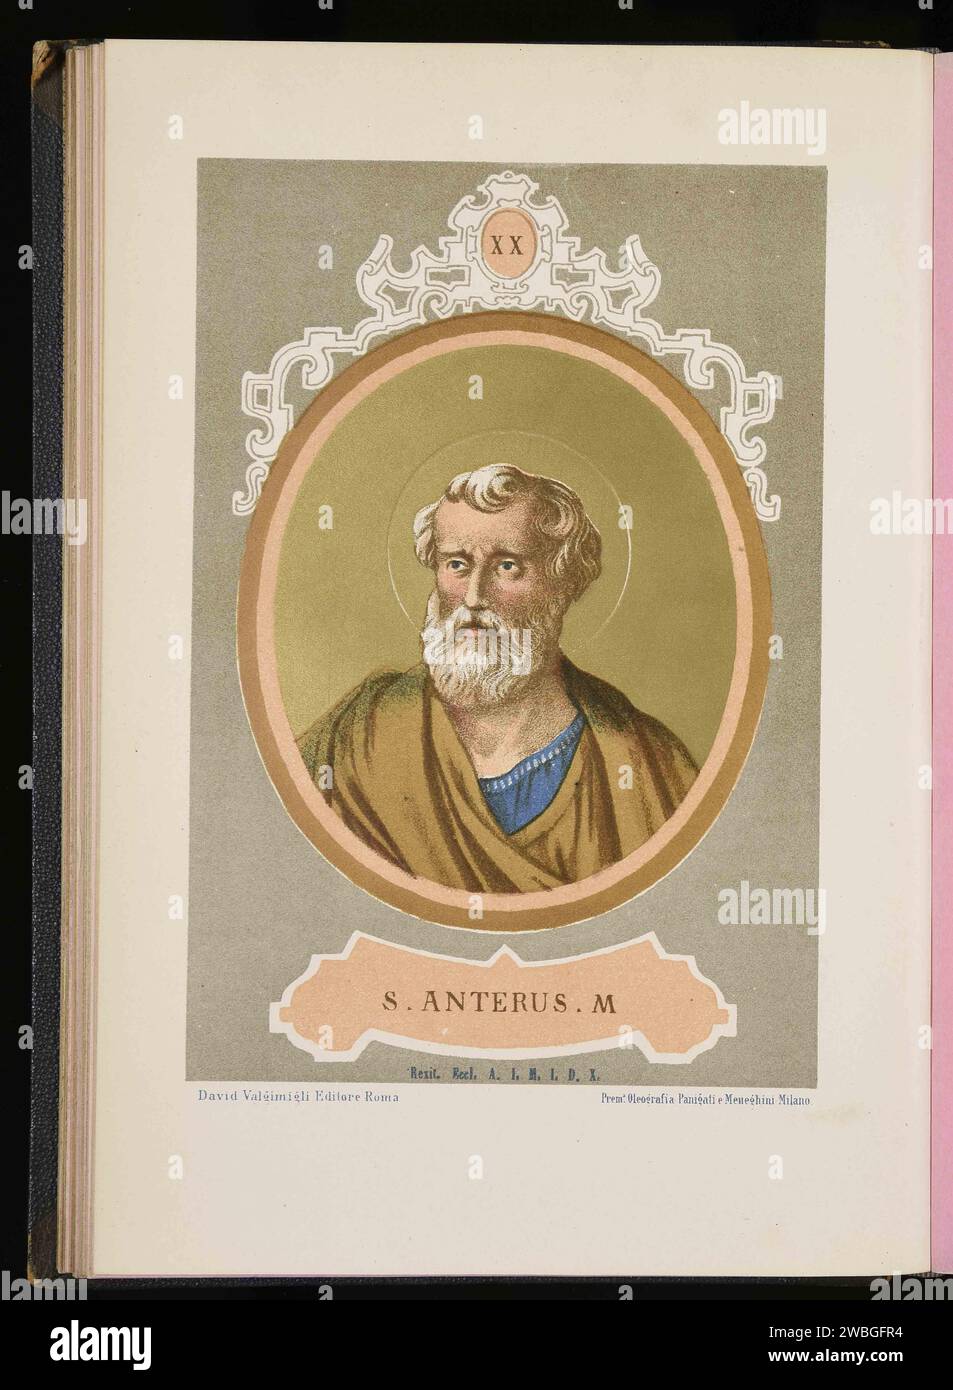 Un'incisione del 1879 di Papa Antero. Papa Antero fu pontefice dall'AD235-AD236, morì dopo soli 43 giorni di mandato. Era il diciannovesimo papa. Foto Stock